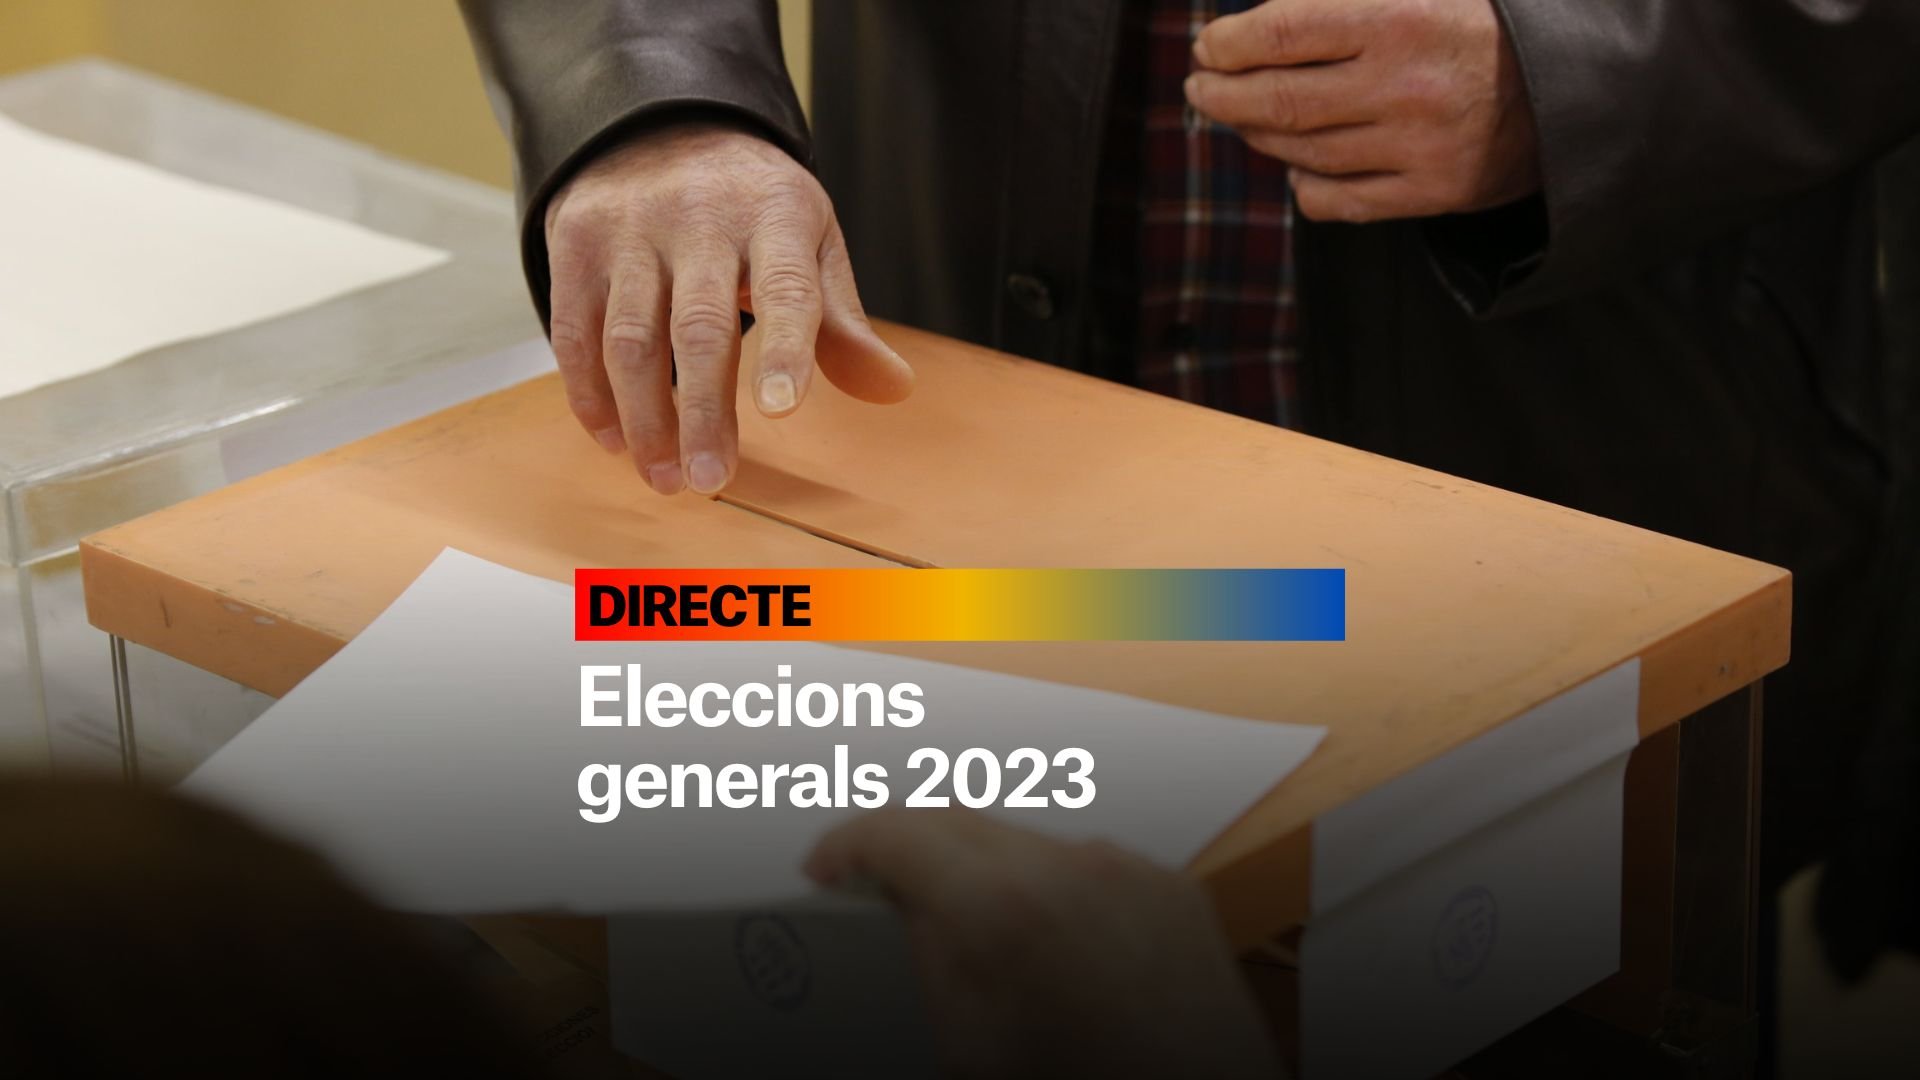 Eleccions generals 2023, DIRECTE | Últimes notícies del 15 de juliol